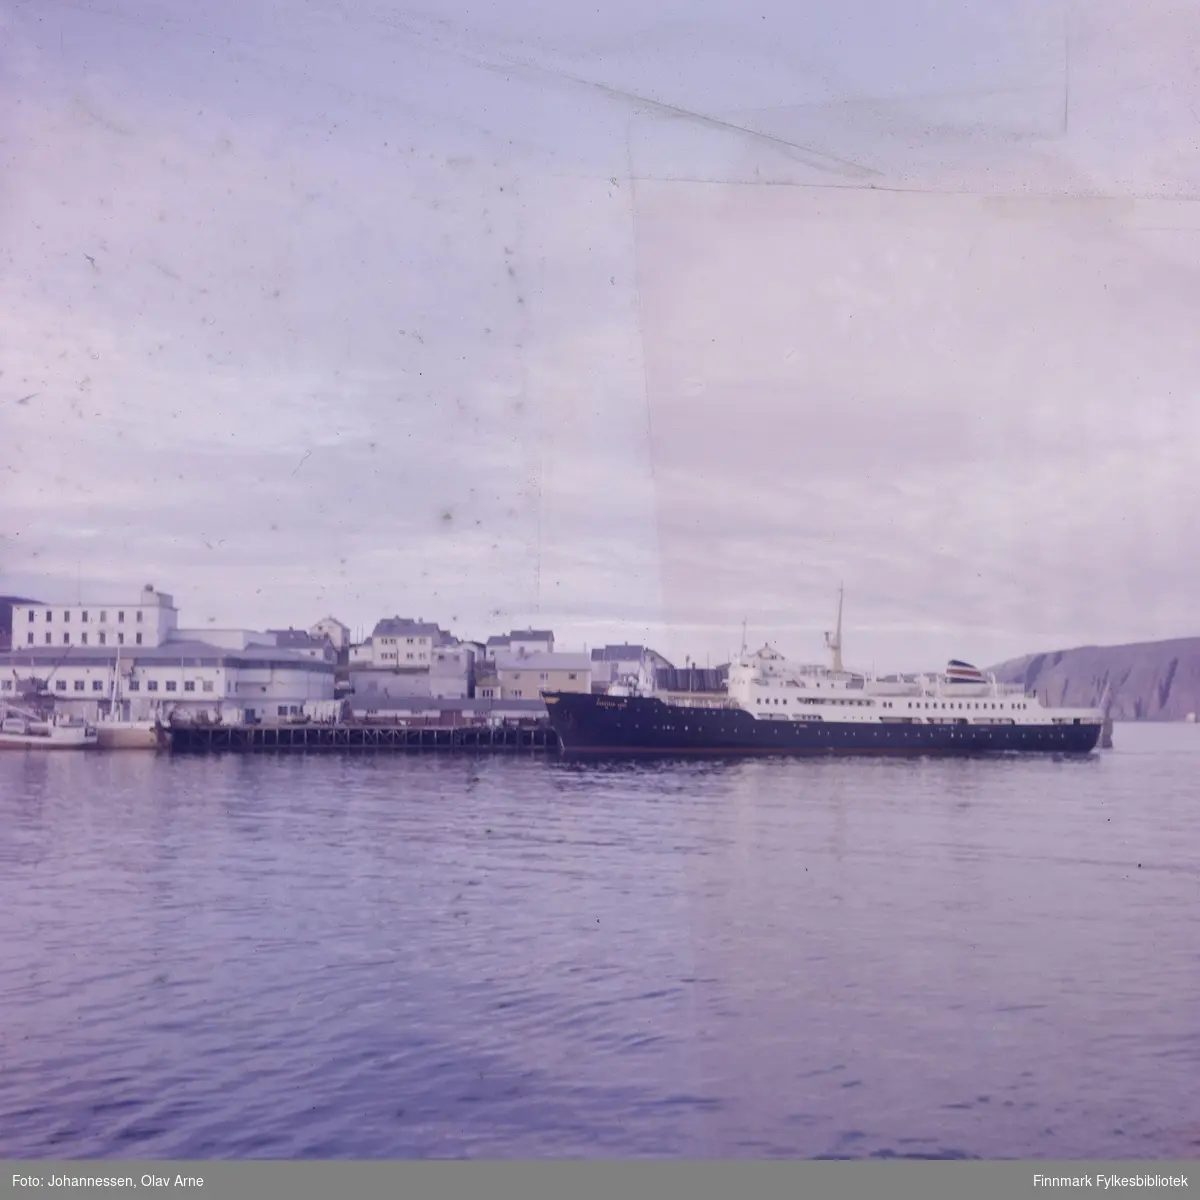 Foto av hurtigrute i Båtsfjord. Hurtigruteskipet er RAGNVALD JARL.

Til venstre kan man se Finotro bruket

Foto trolig tatt på 1960/70-tallet